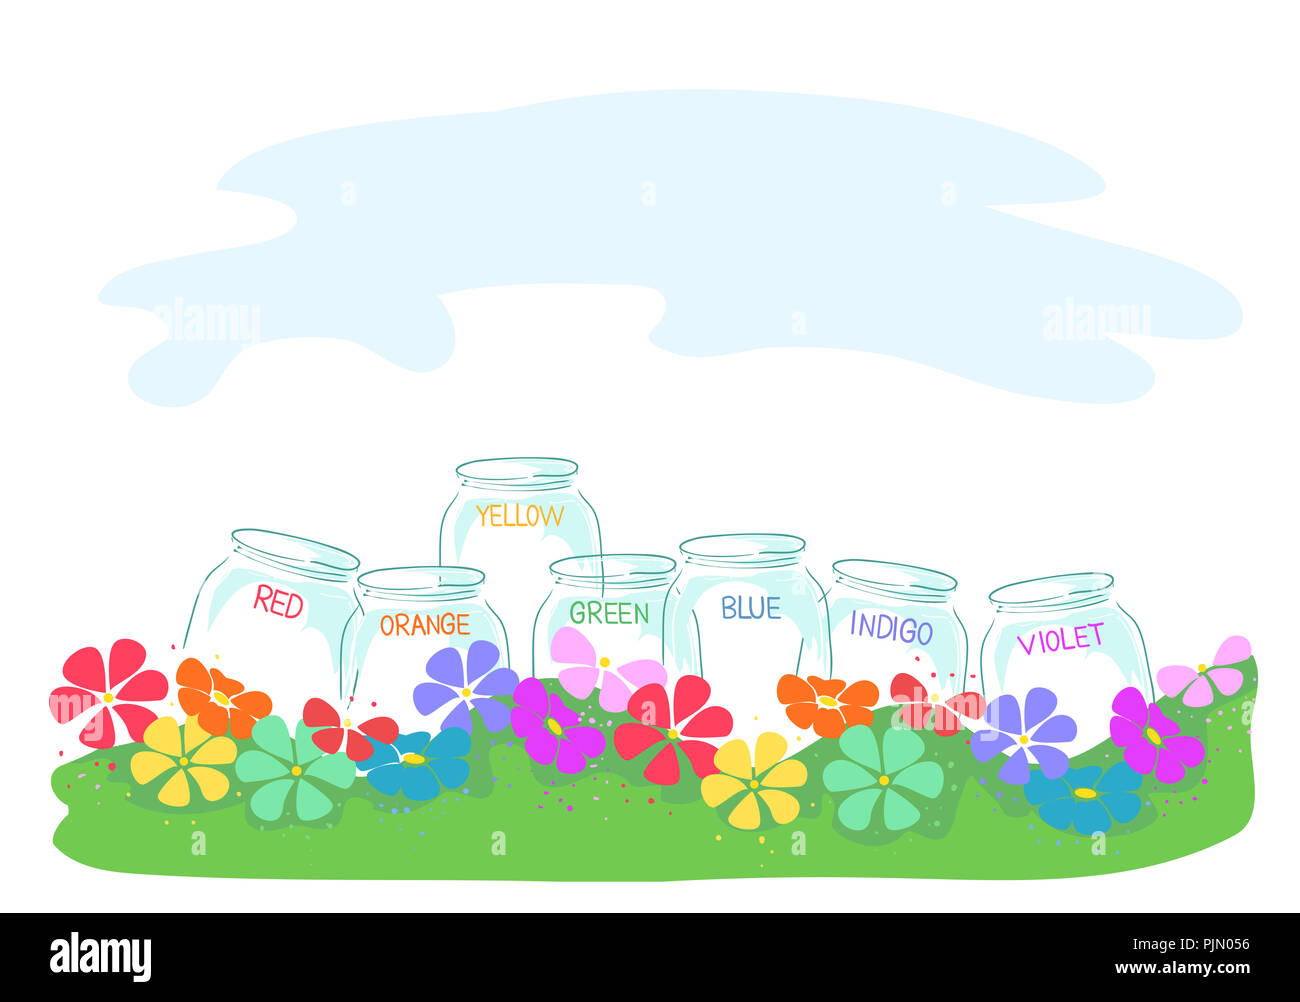 Illustrazione di diversi colori Arcobaleno etichettato vasi sull'erba tra i fiori Foto Stock